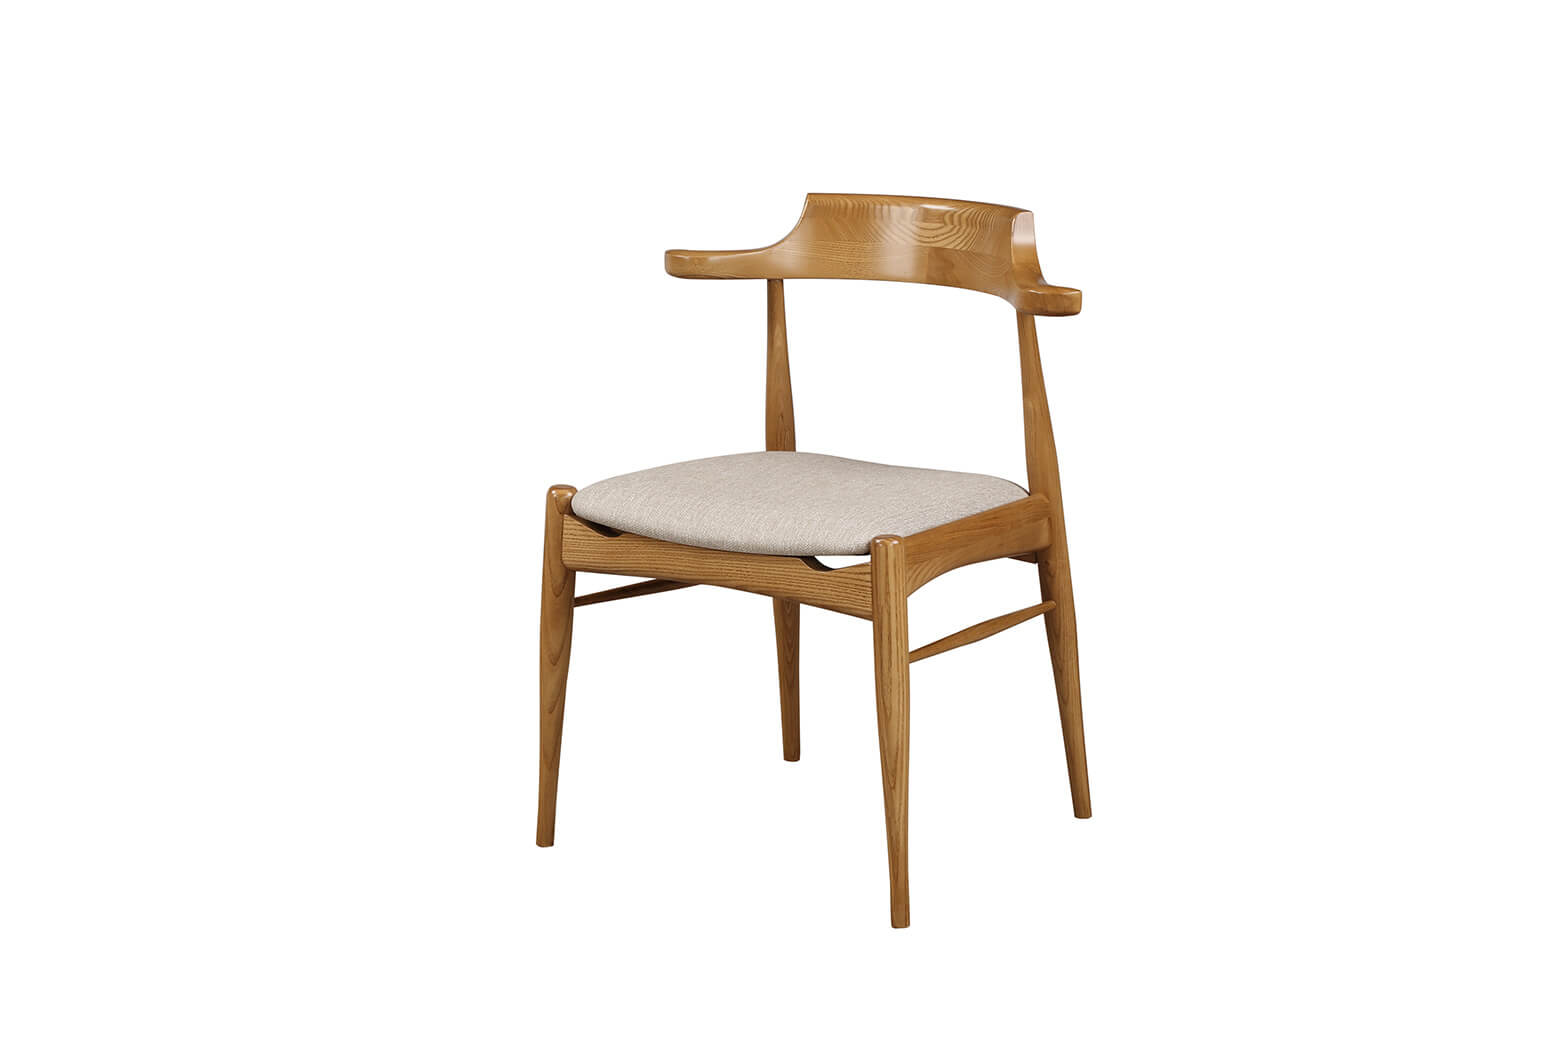 926-4  梅長蘇栓木灰色皮餐椅